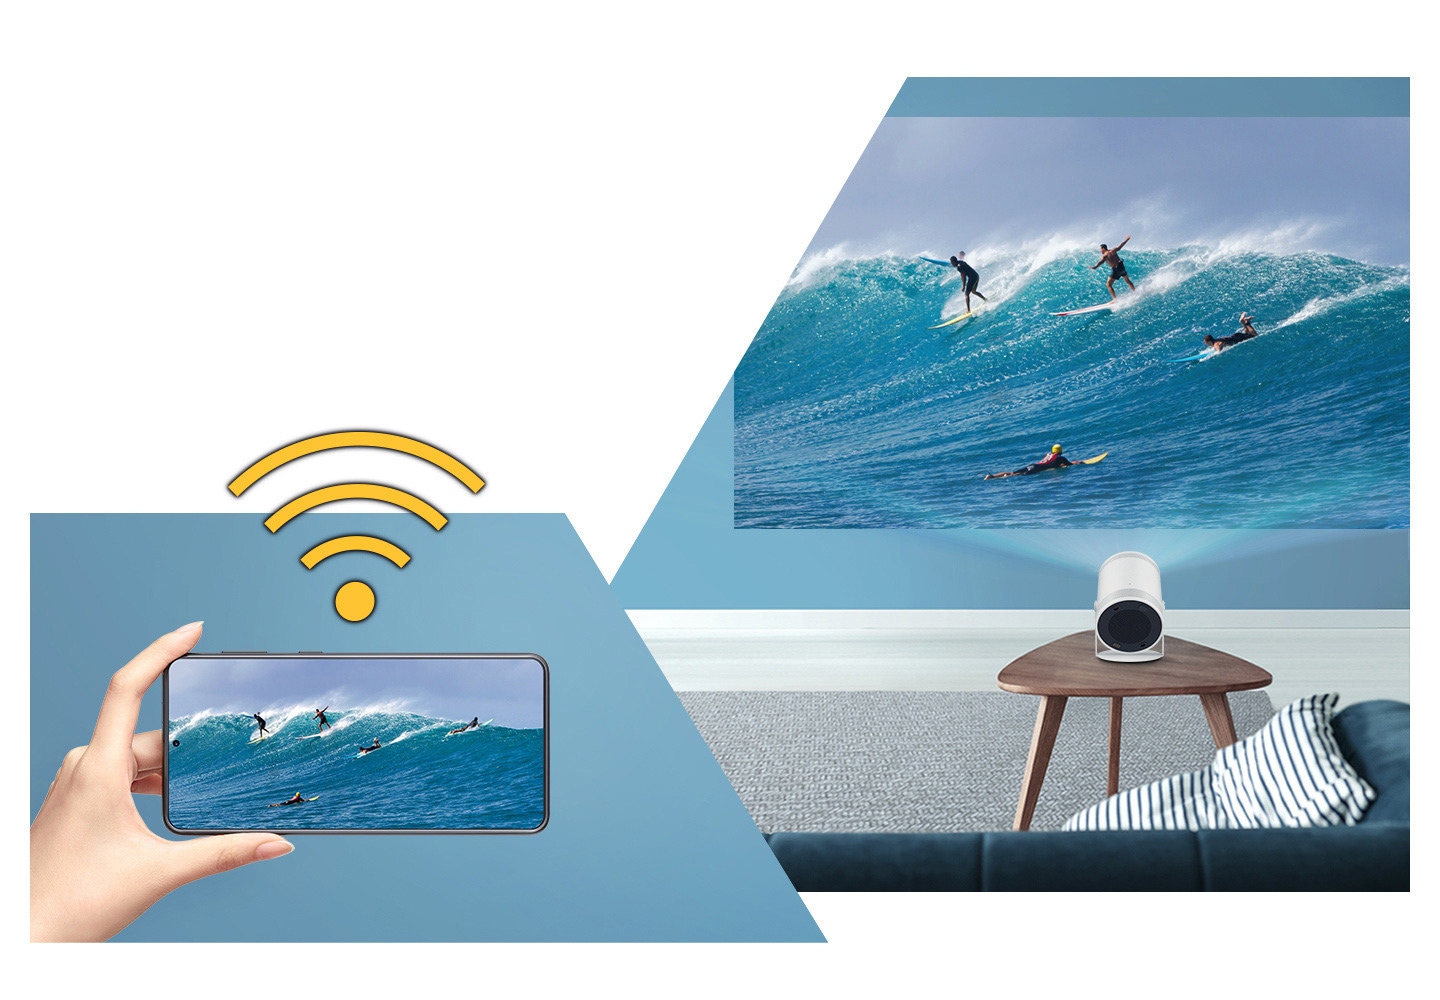 Wi-Fi-Zeichen über einer Hand, die ein mobiles Gerät hält. Ein Surfbild auf dem mobilen Gerät wird auf dem großen Bildschirm von The Freestyle gespiegelt.